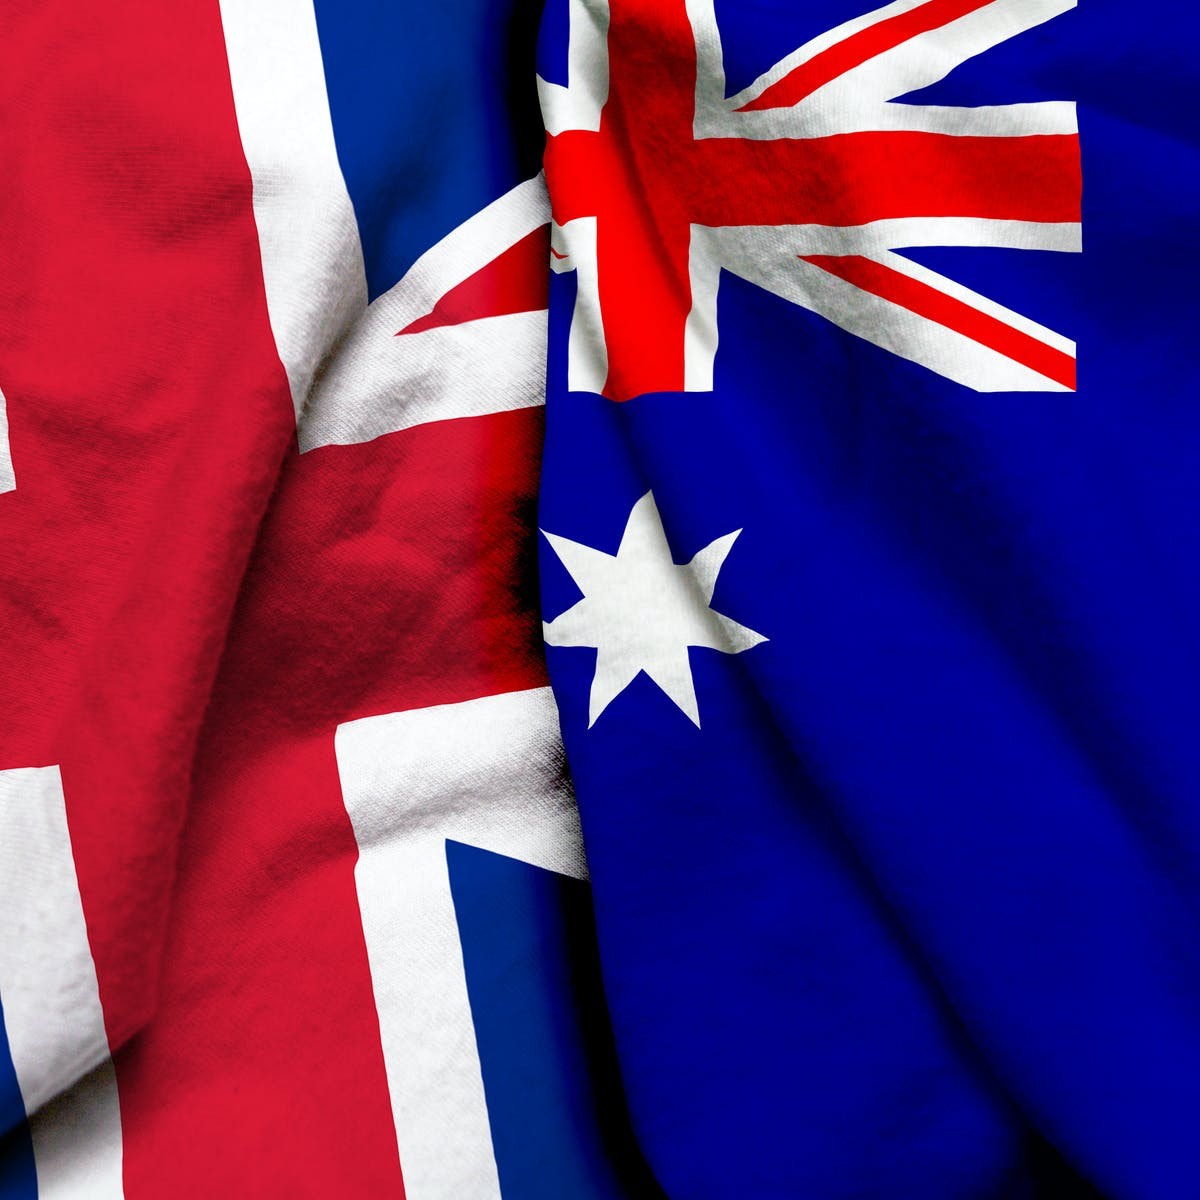 Anh-Australia sắp sửa công bố thỏa thuận lớn. (Nguồn: Shutterstock)